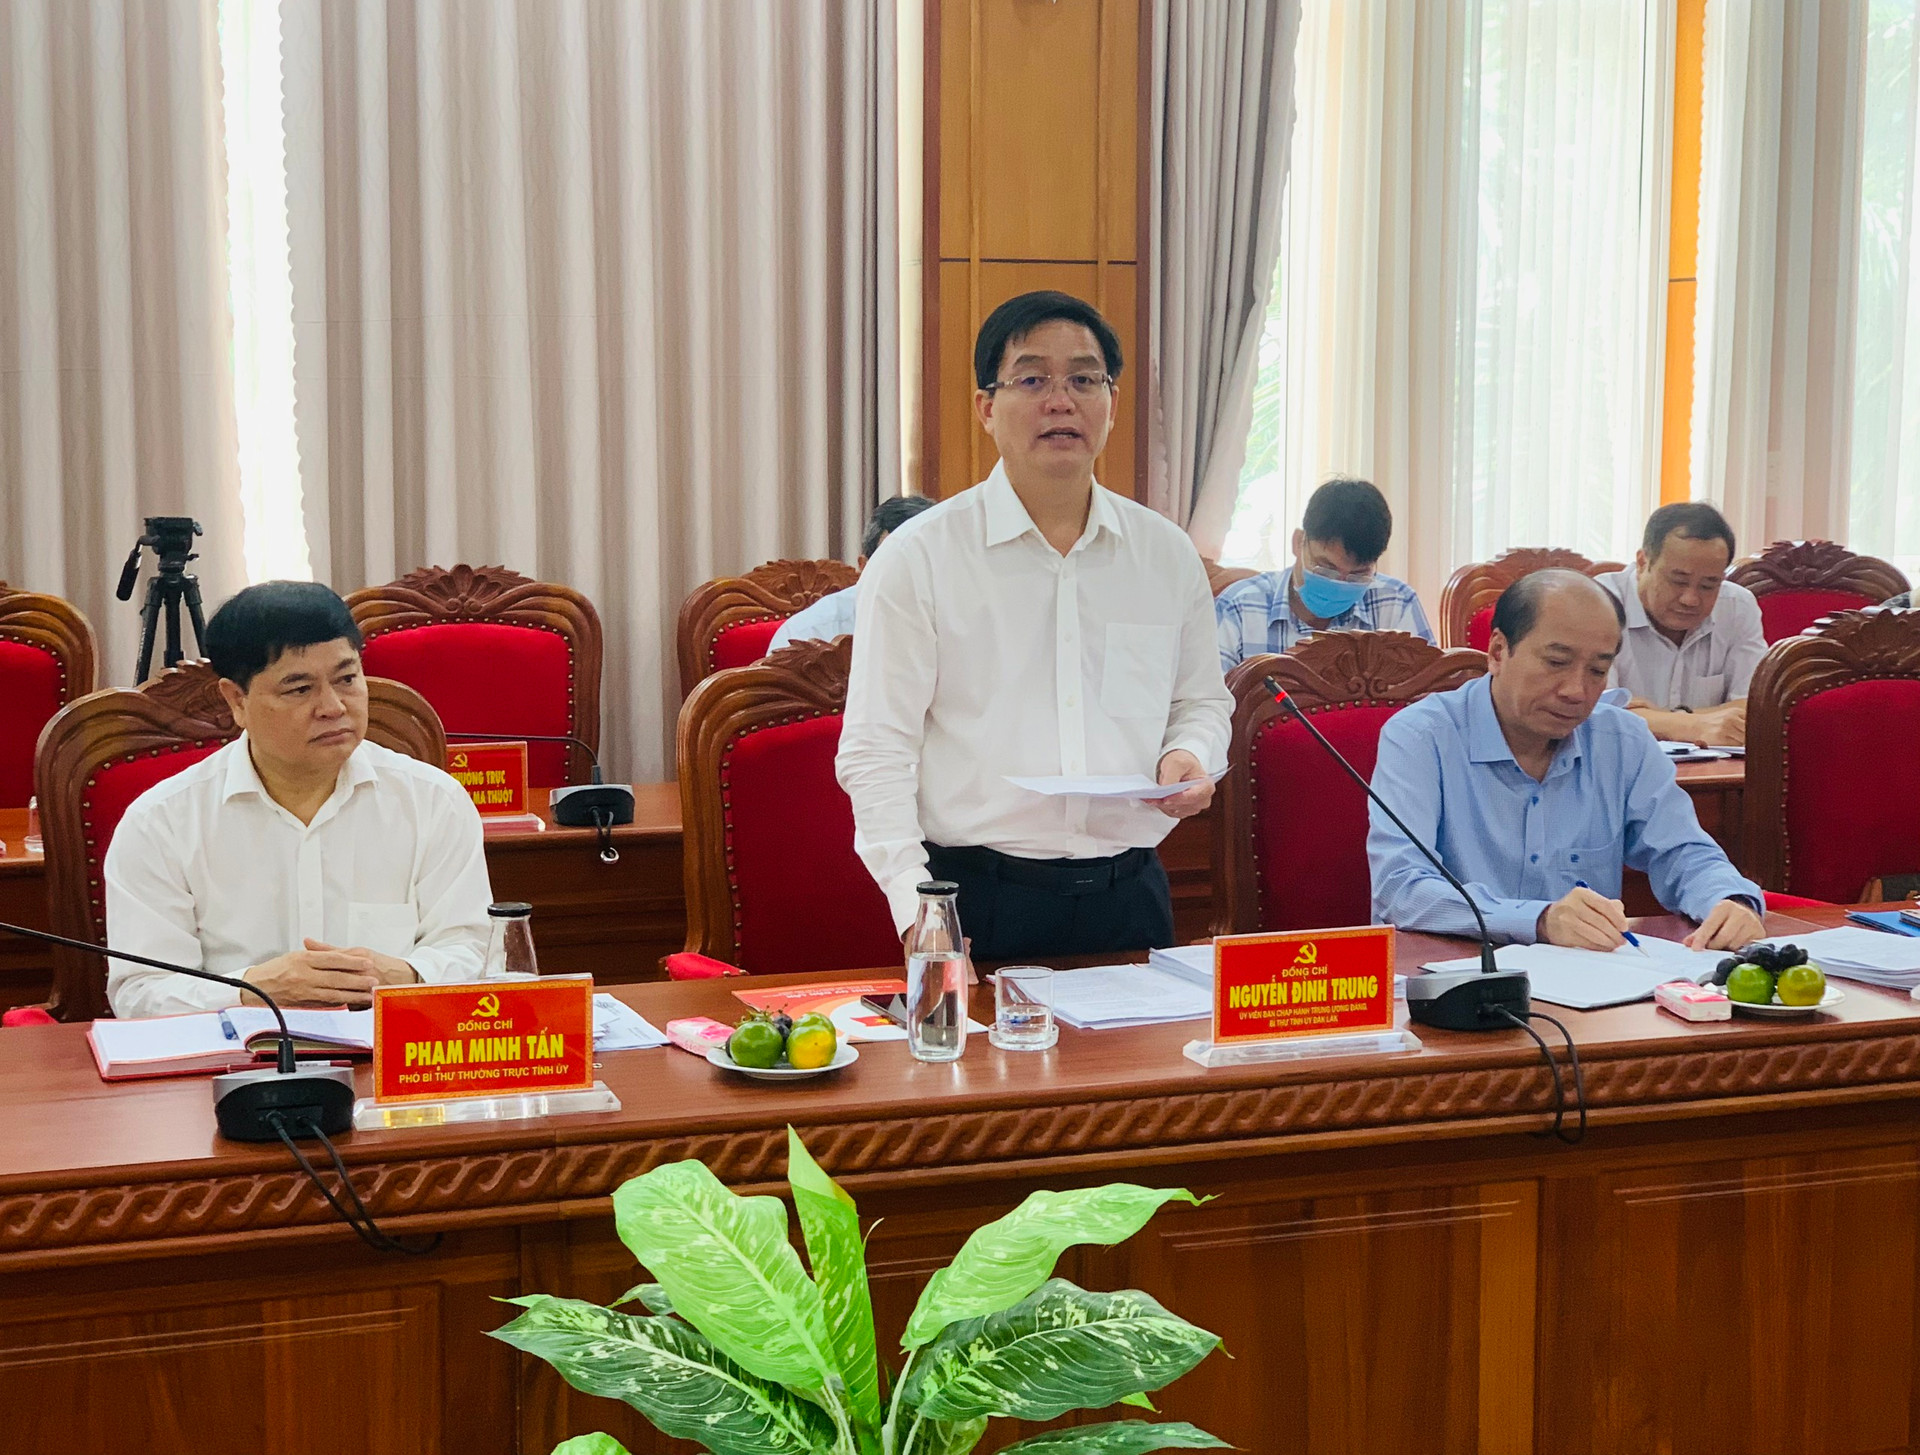 Ông Nguyễn Đình Trung, Ủy viên Trung ương Đảng, Bí thư Tỉnh ủy Đắk Lắk phát biểu tiếp thu ý kiến của Đoàn kiểm tra tại buổi làm việc.